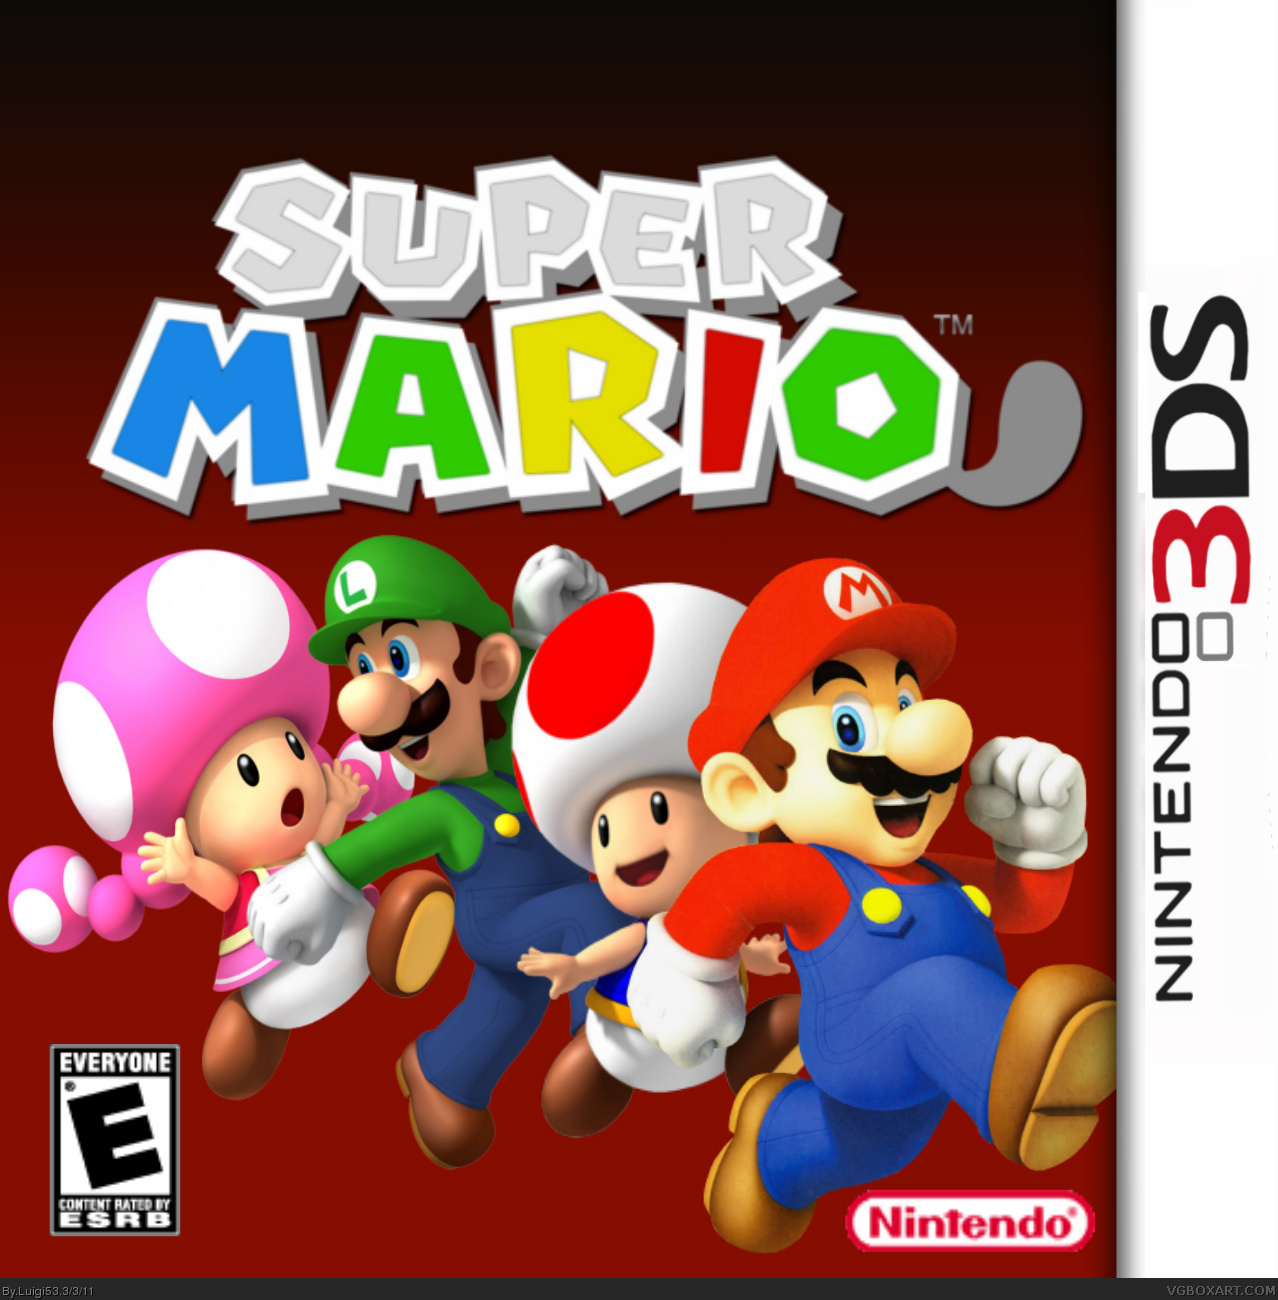 Super Mario 3D box cover